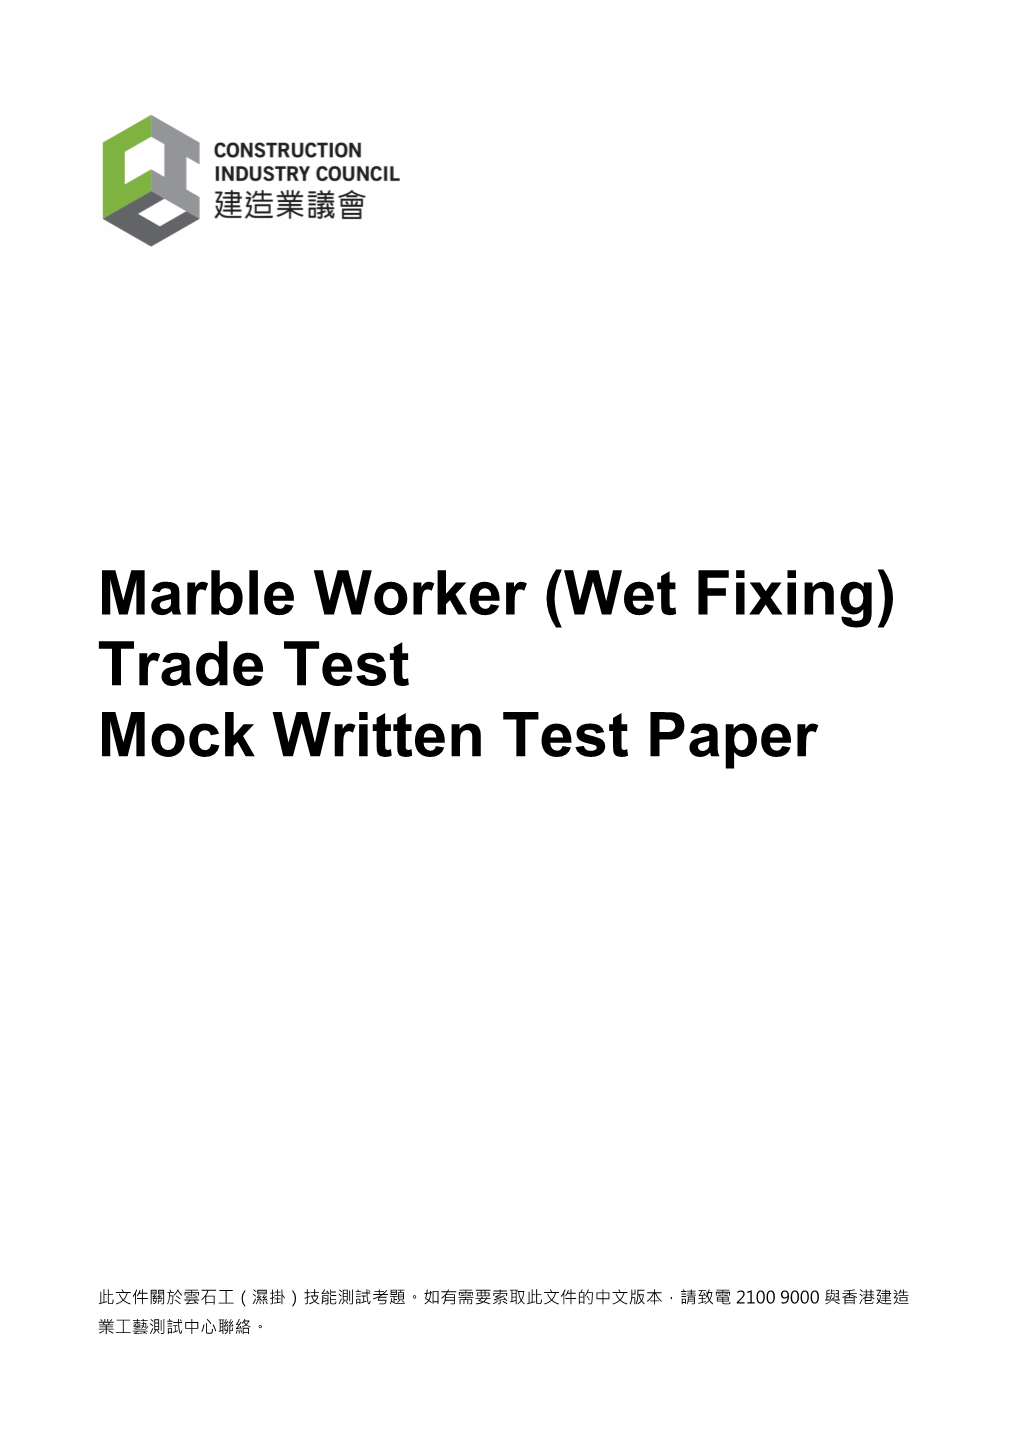 Mock Written Test Paper